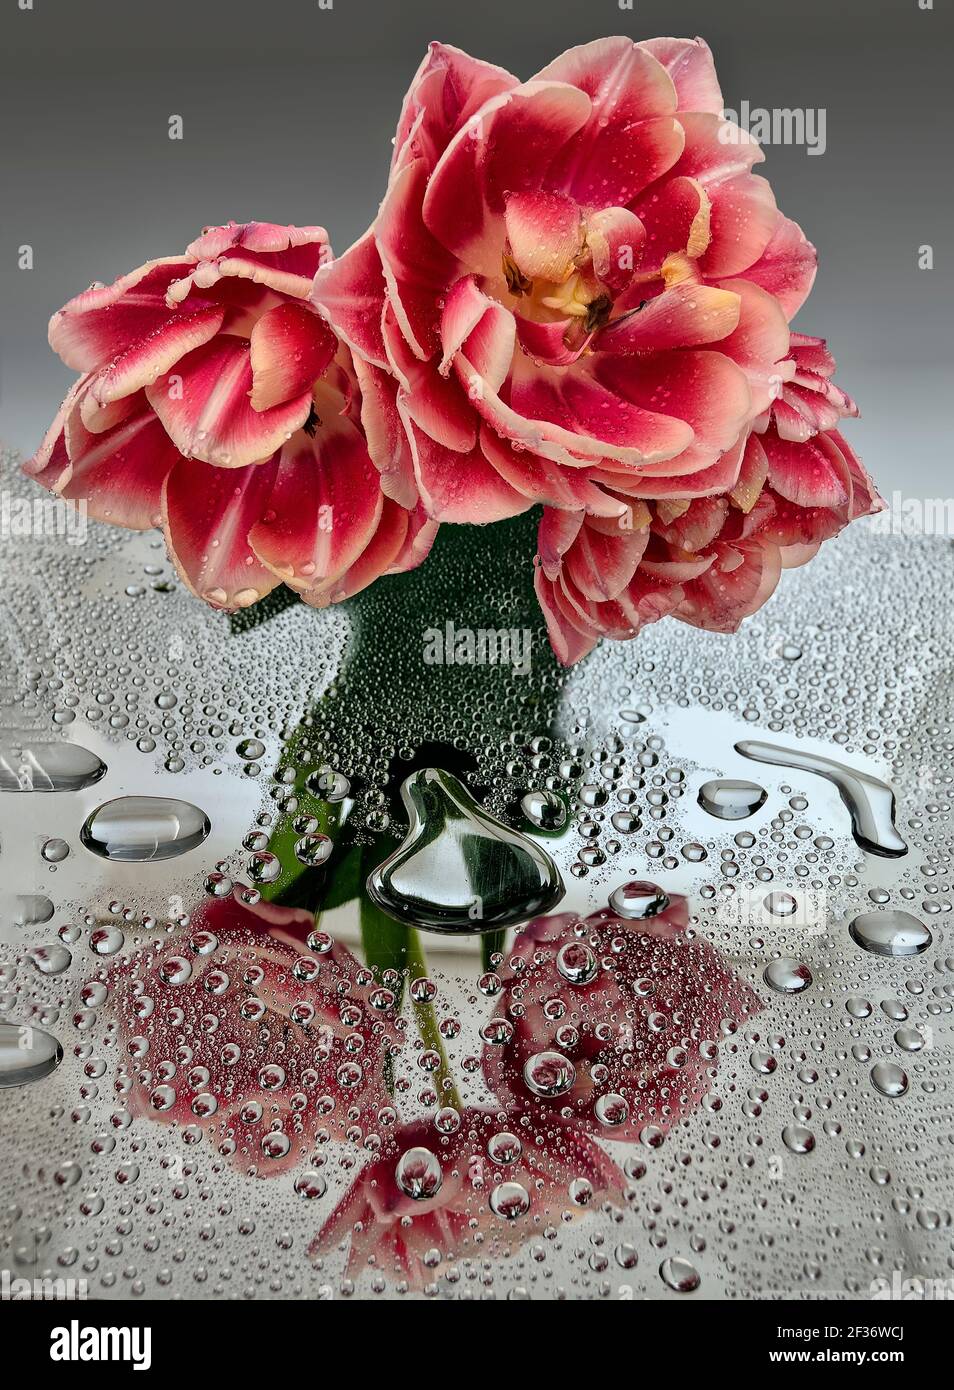 Trois tulipes blanches roses en terre ferme avec gouttes d'eau et réflexion sur la surface du miroir. Image artistique de la fraîcheur et de la pureté de la nature printanière. Romantique Banque D'Images